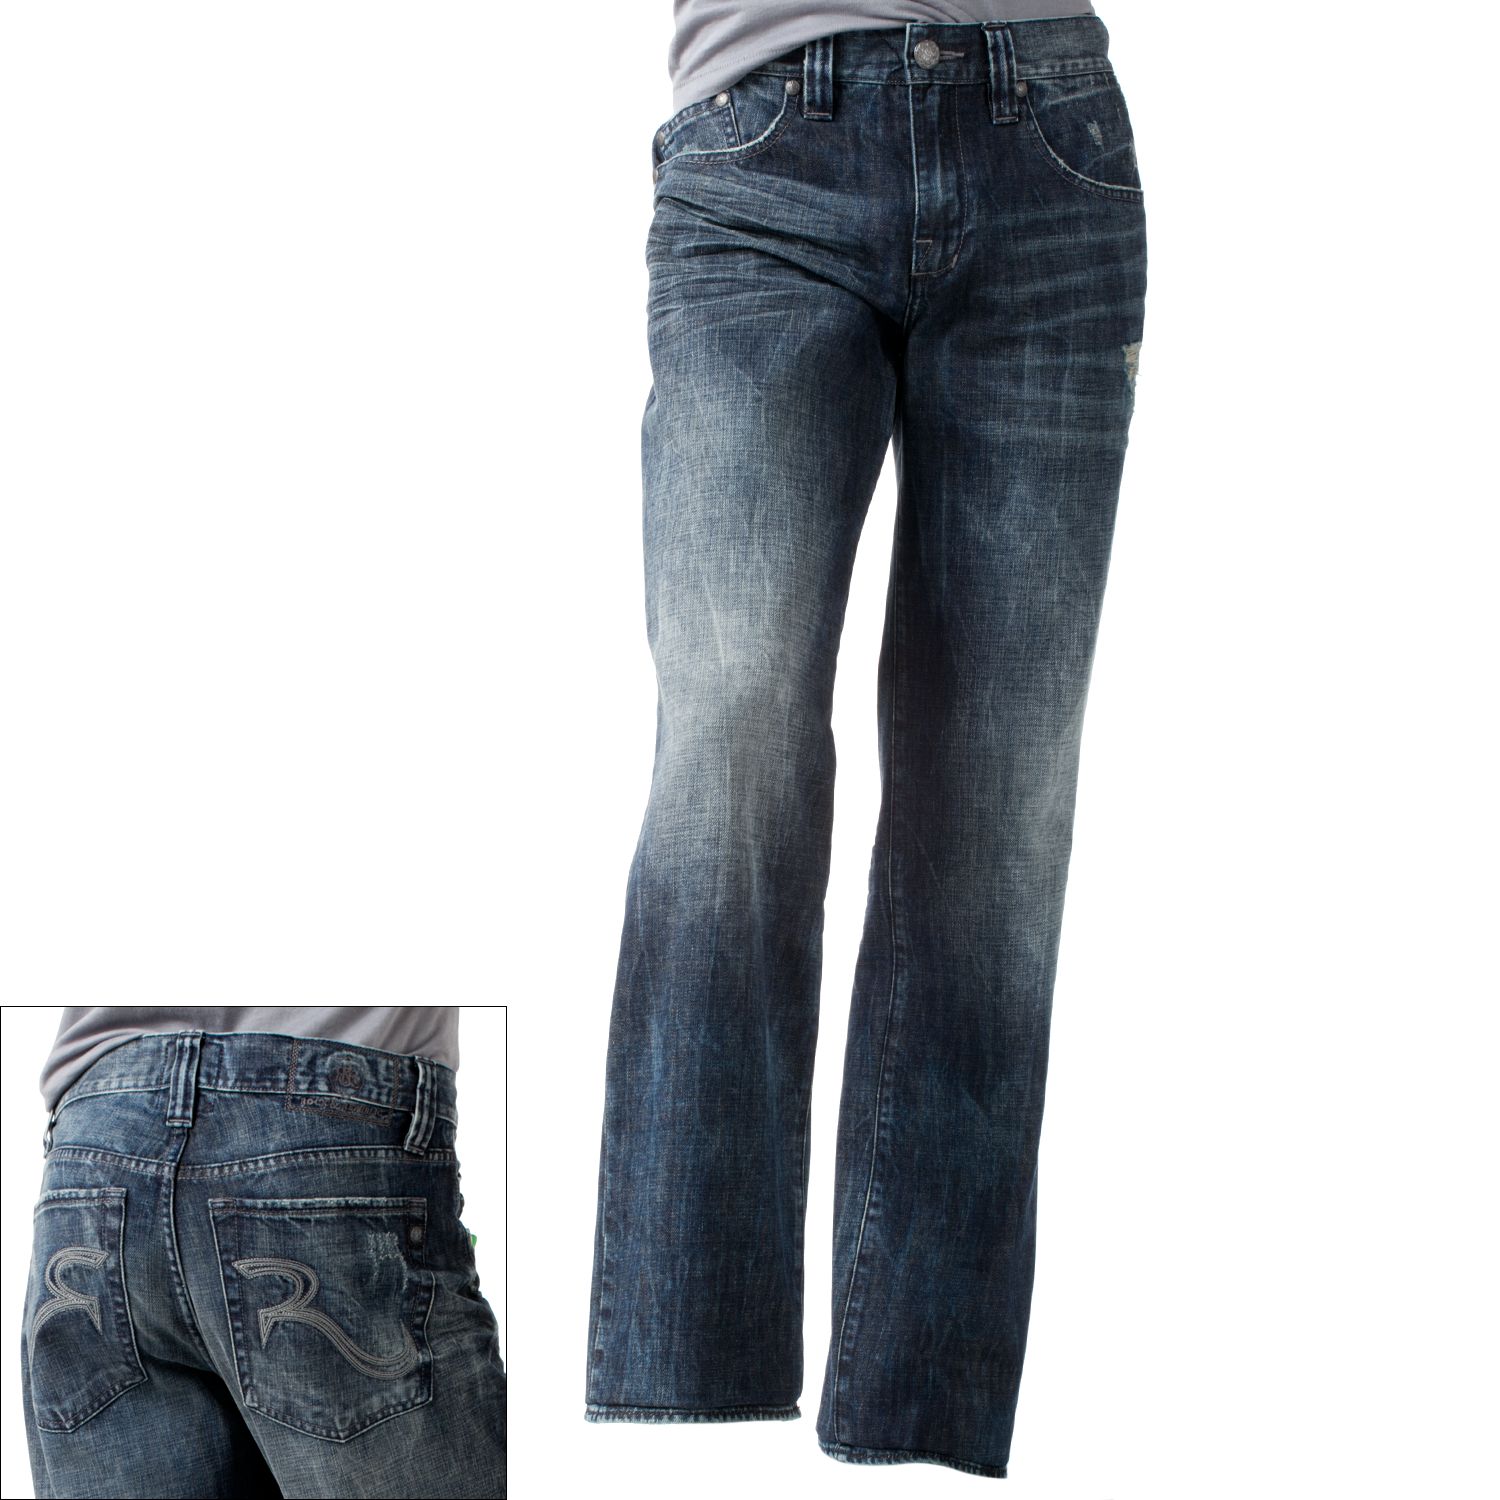 jeans at kohls